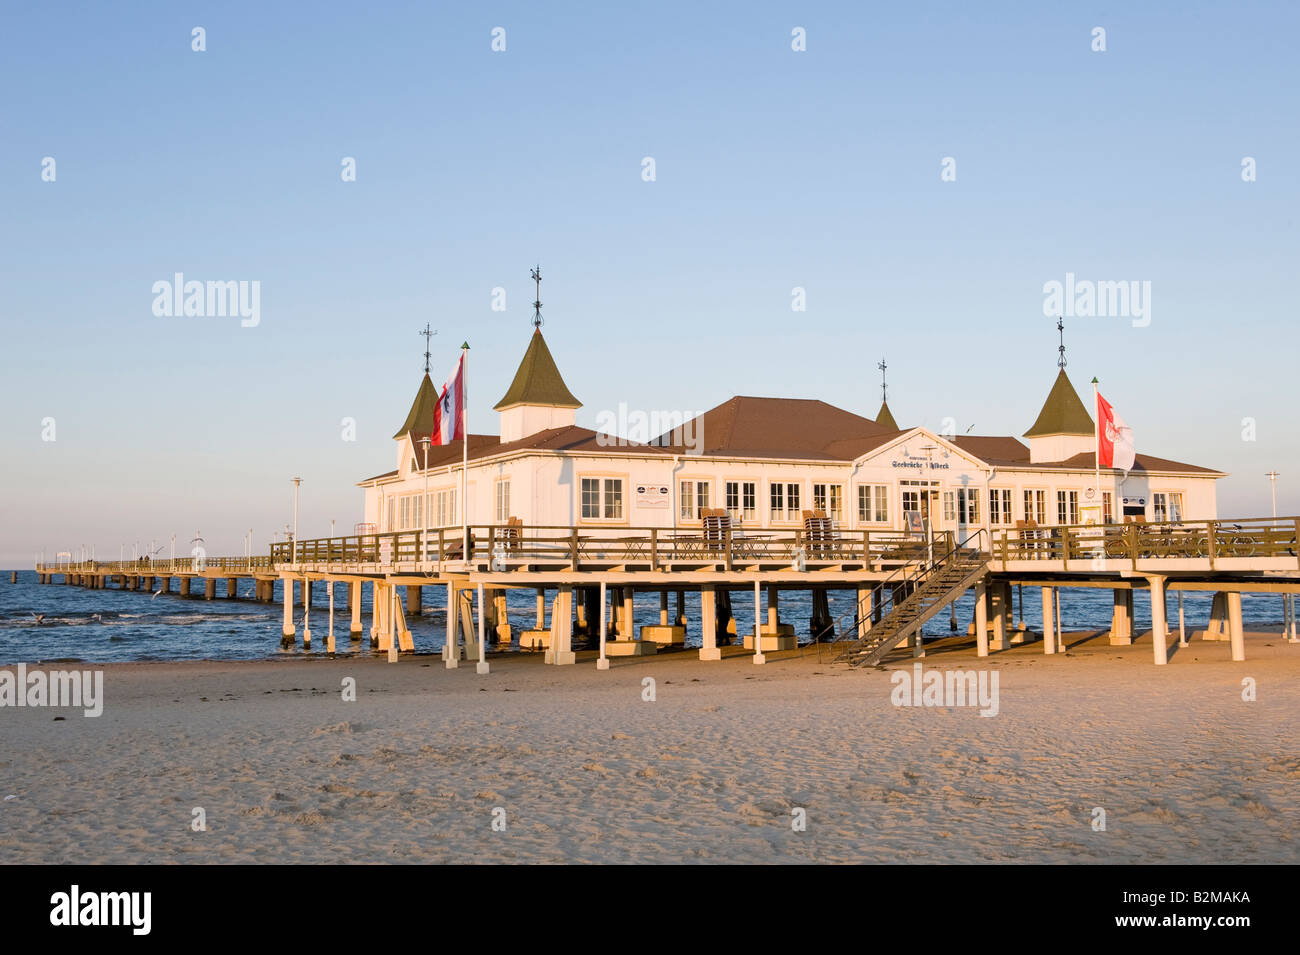 Historischen Pier, Seebad Ahlbeck, Insel Usedom, Mecklenburg-Western Pomerania, Deutschland, Europa Stockfoto